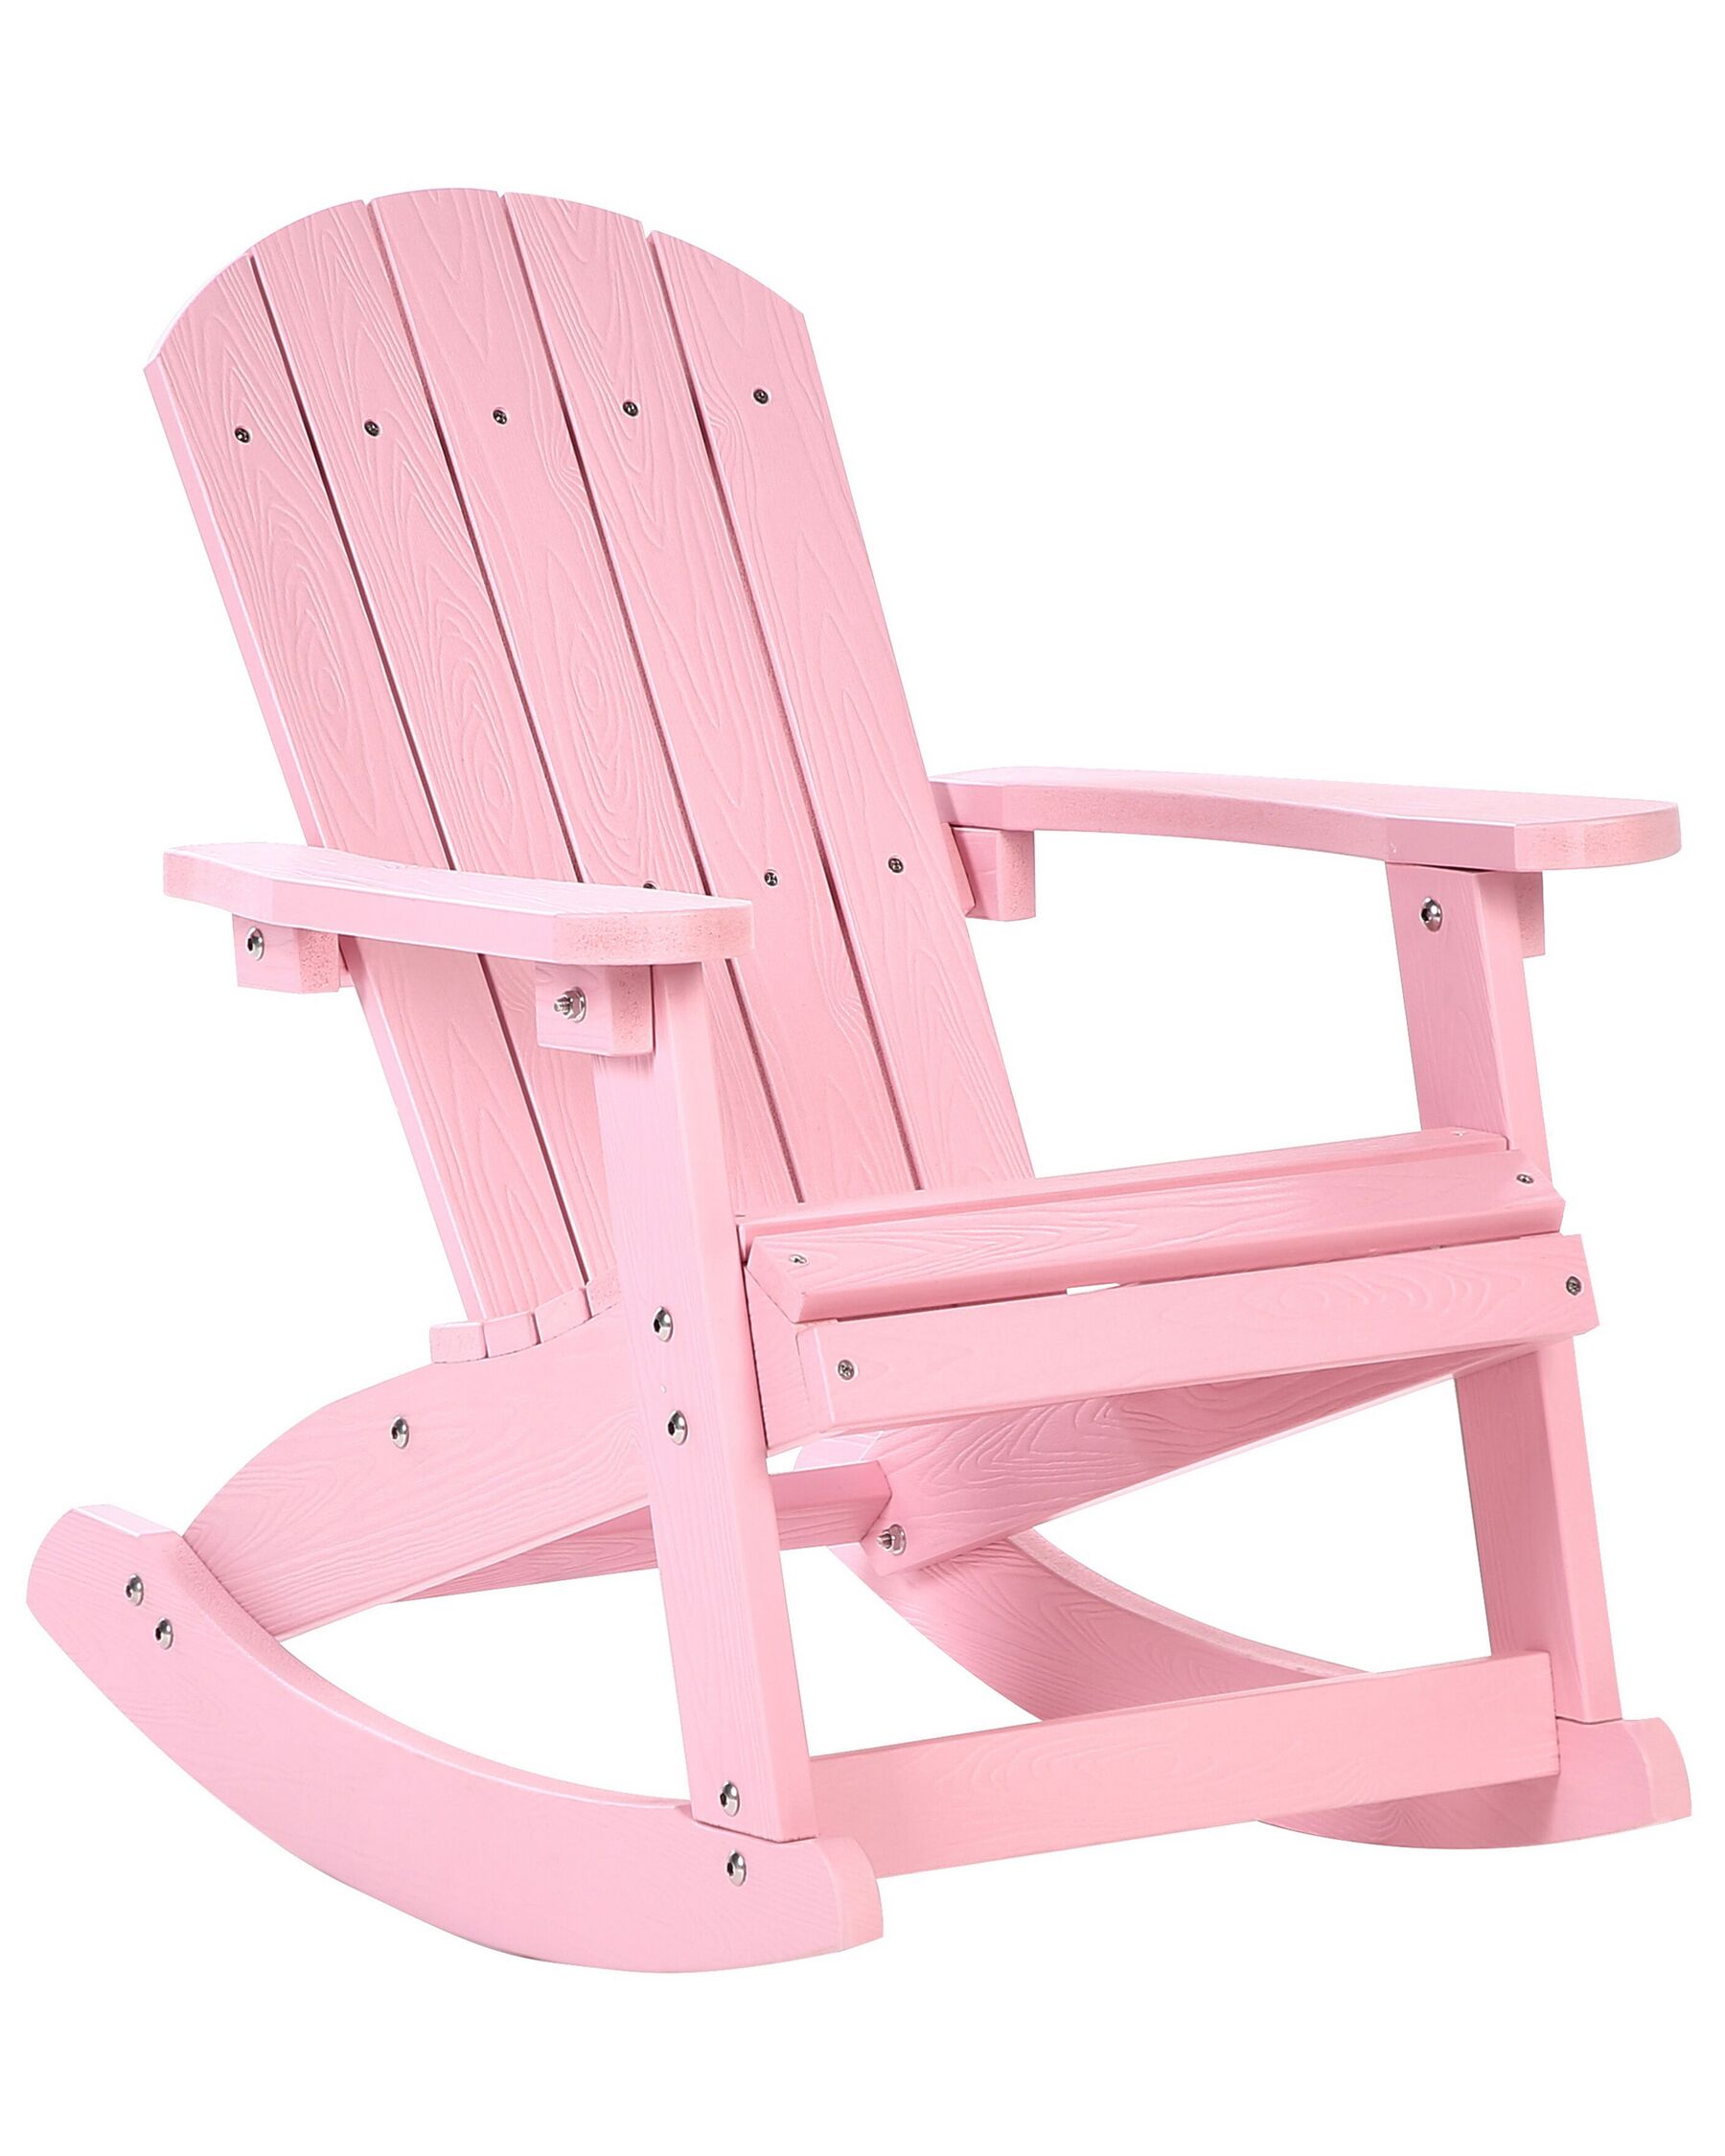 Fotel bujany ogrodowy dla dzieci różowy ADIRONDACK_918327